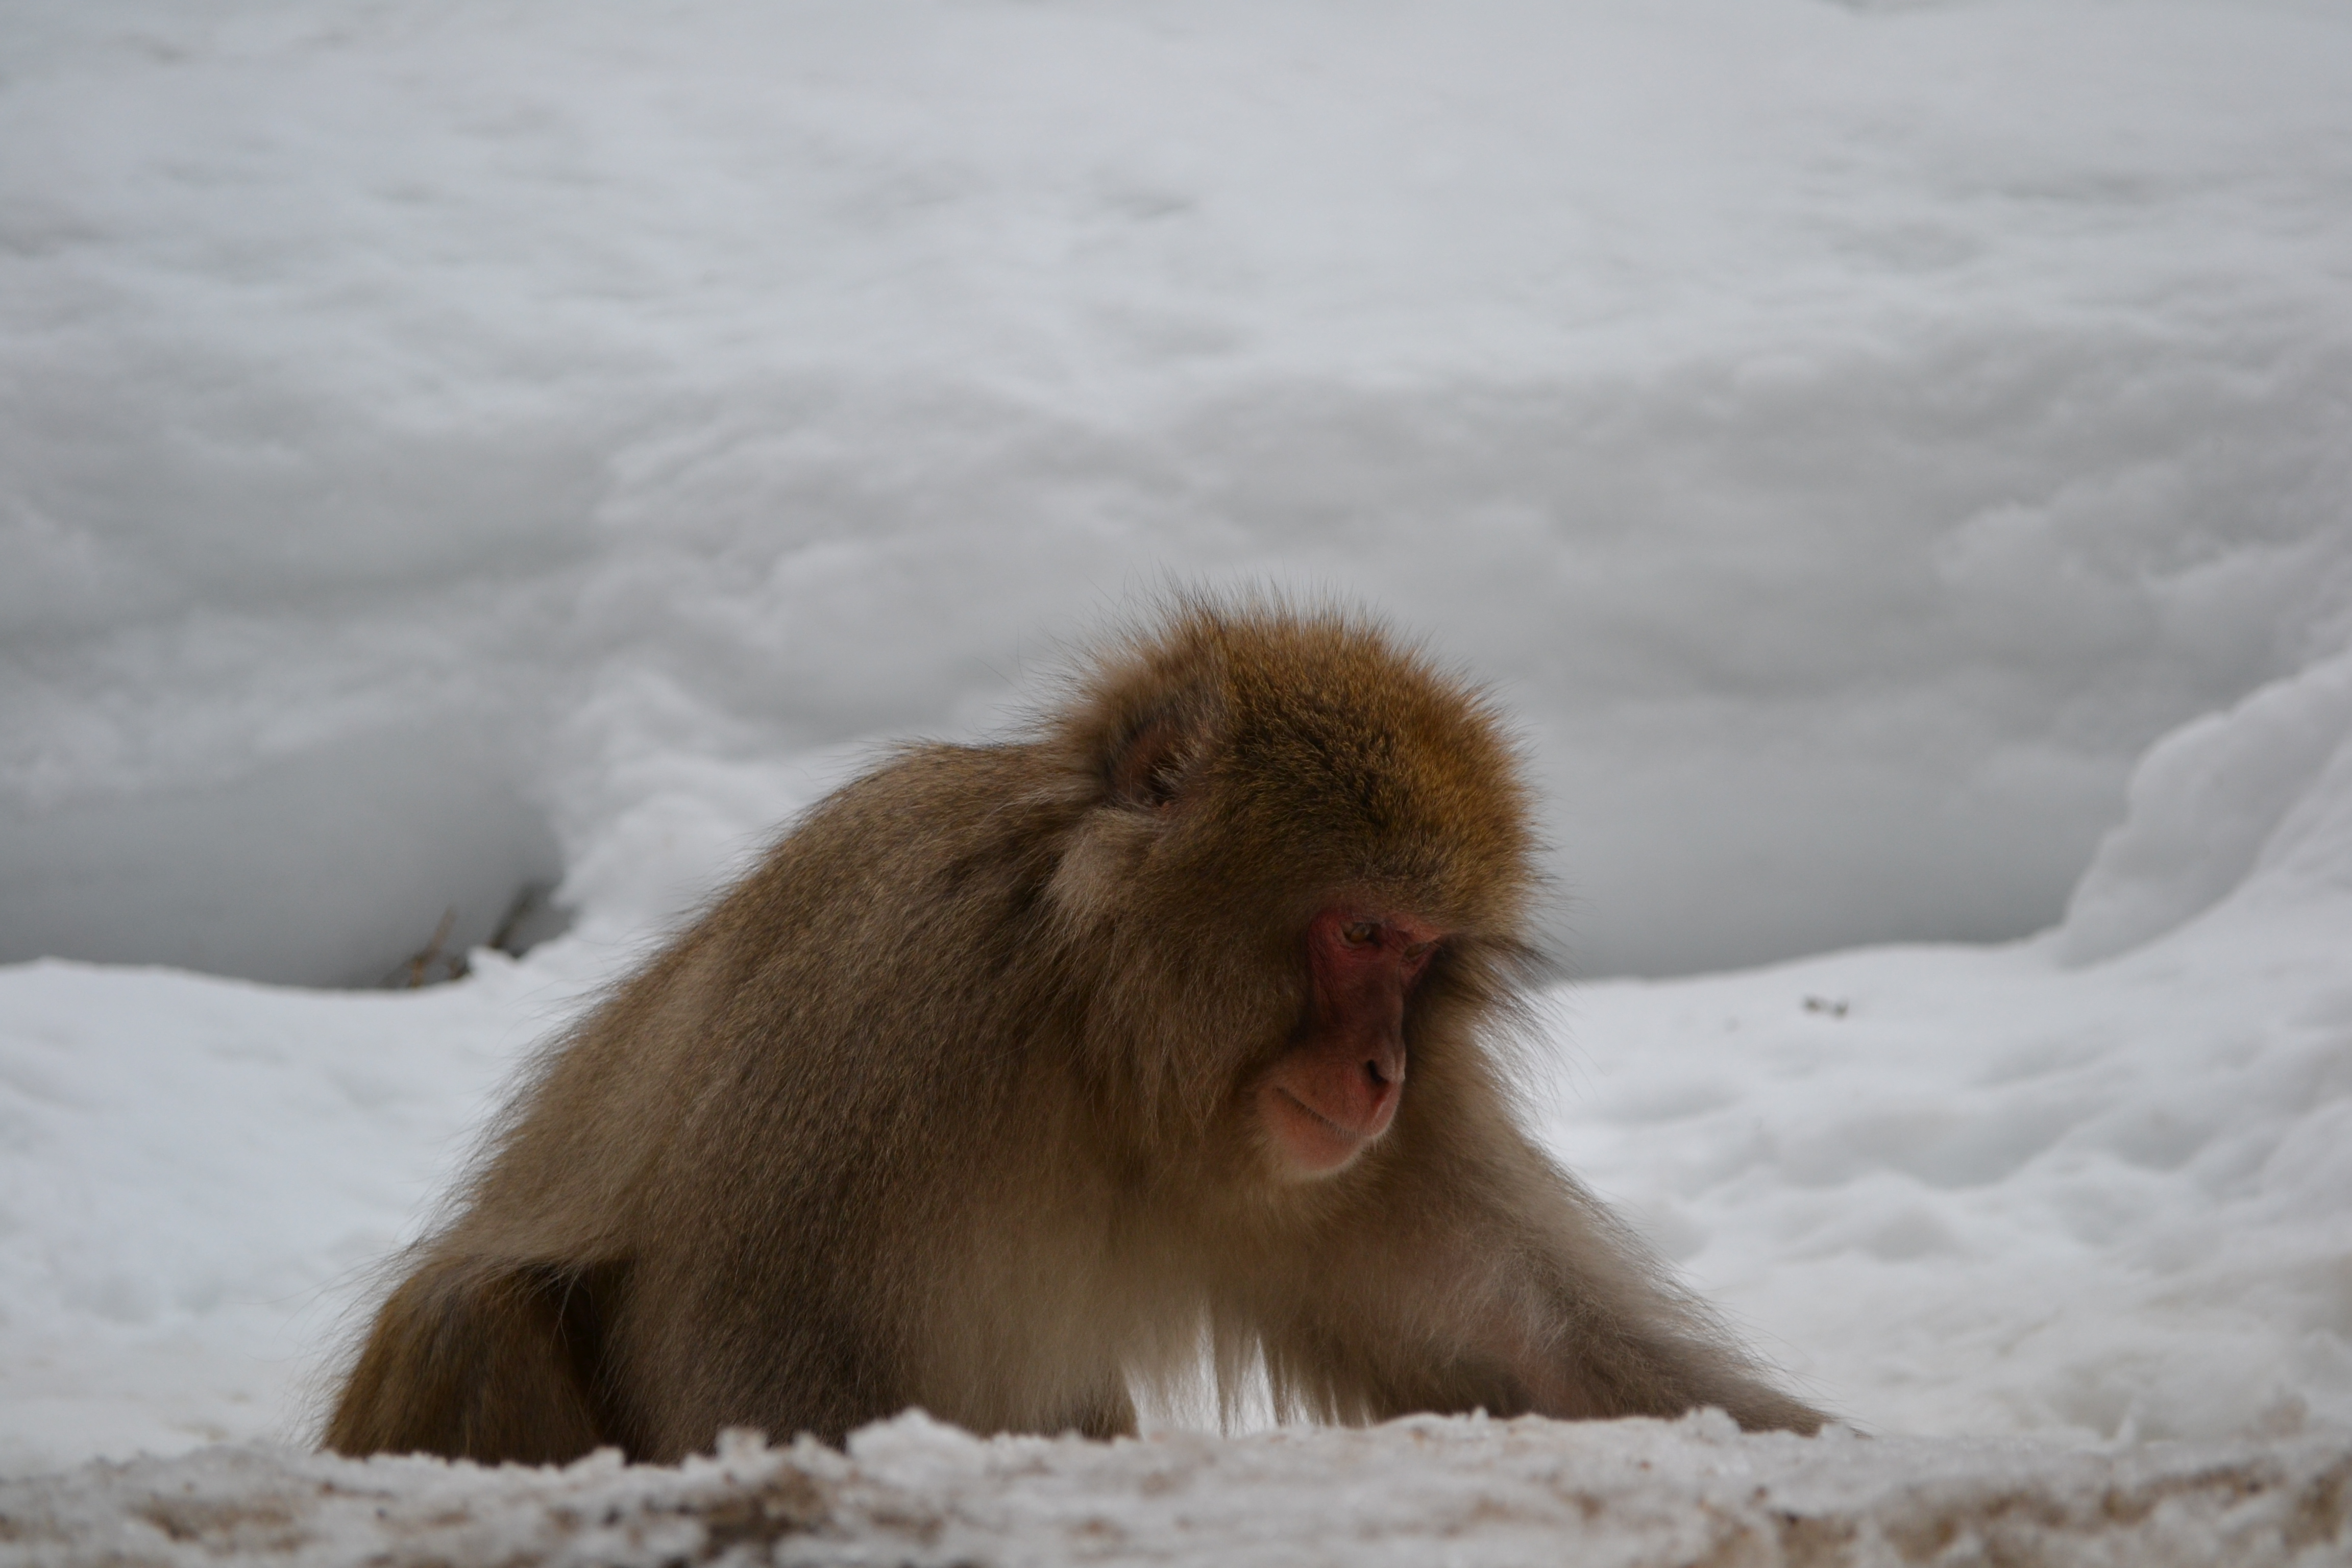 Snow Monkeys near Nagano